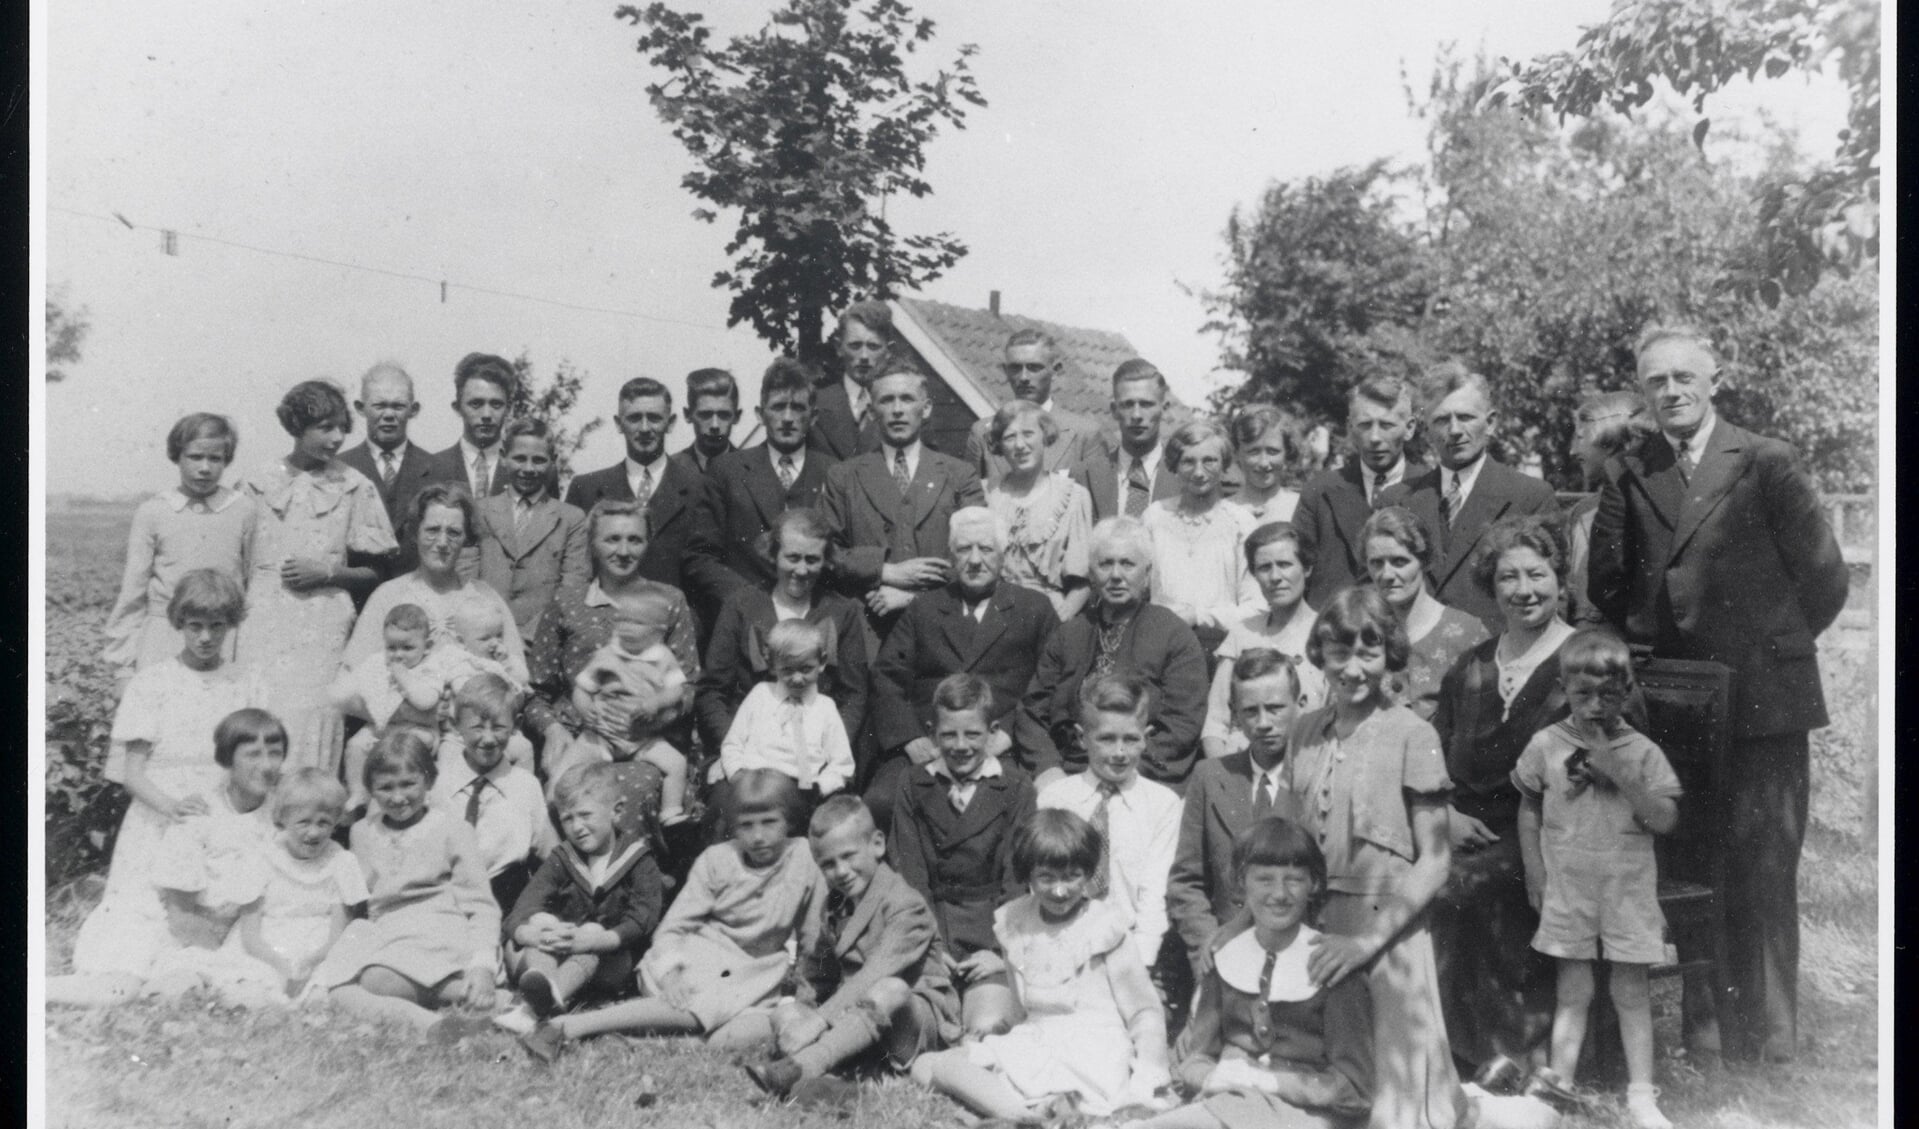 De familie Mak uit Wormer, met opa Jan Mak en opoe Marijtje Romein in het midden, 1936.